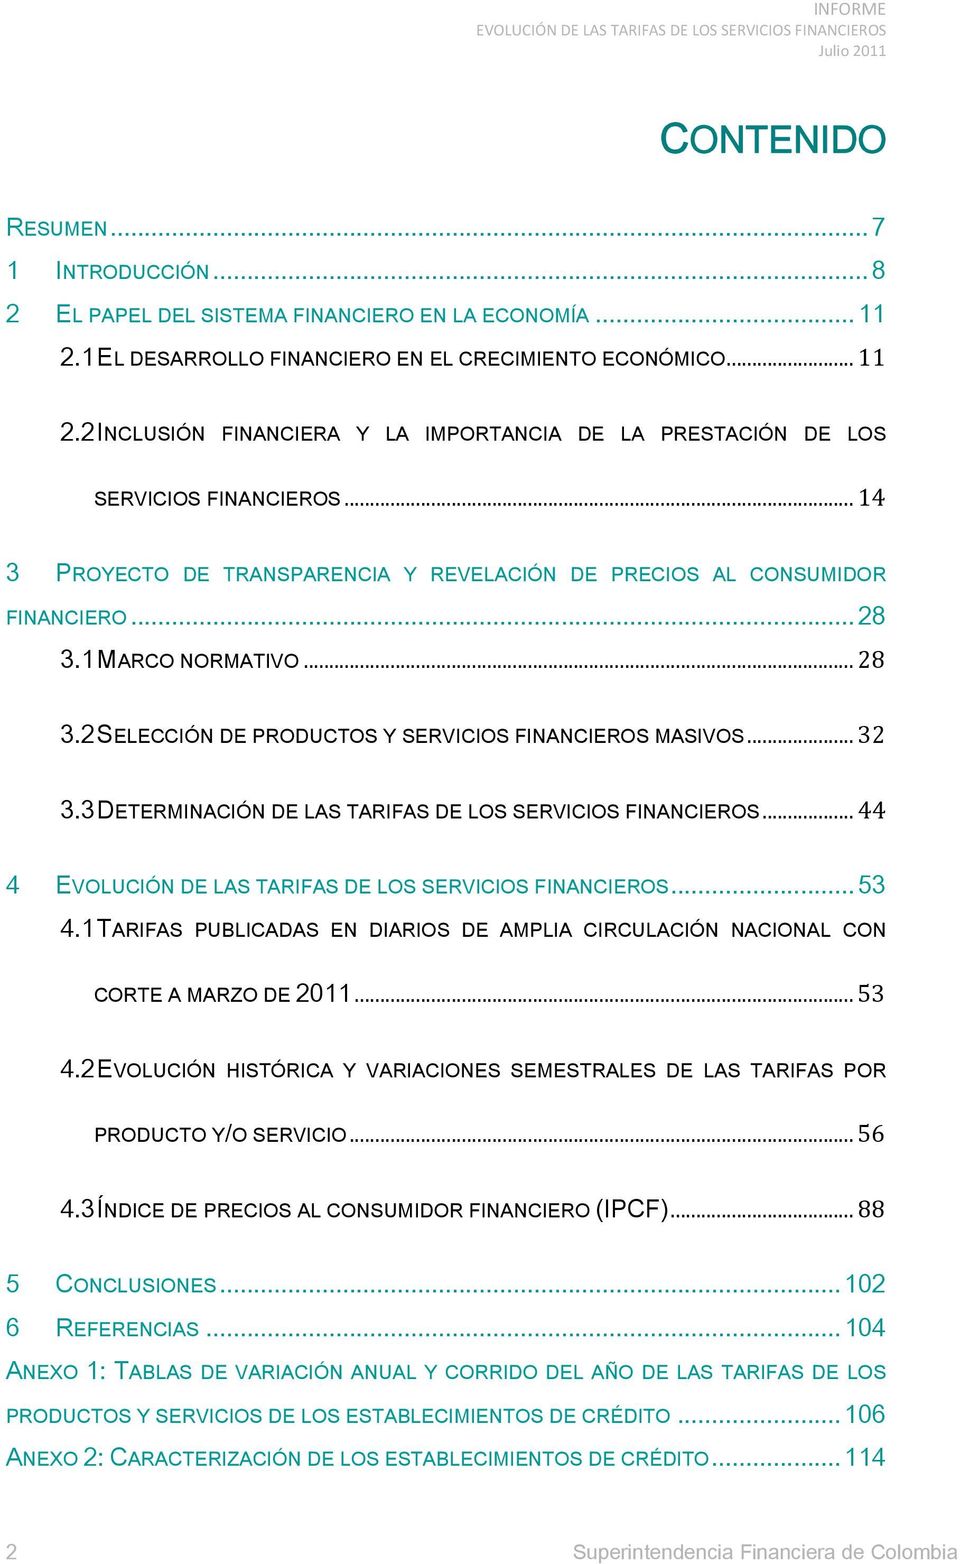 3 DETERMINACIÓN DE LAS TARIFAS DE LOS SERVICIOS FINANCIEROS... 44 4... 53 4.1 TARIFAS PUBLICADAS EN DIARIOS DE AMPLIA CIRCULACIÓN NACIONAL CON CORTE A MARZO DE 2011... 53 4.2 EVOLUCIÓN HISTÓRICA Y VARIACIONES SEMESTRALES DE LAS TARIFAS POR PRODUCTO Y/O SERVICIO.